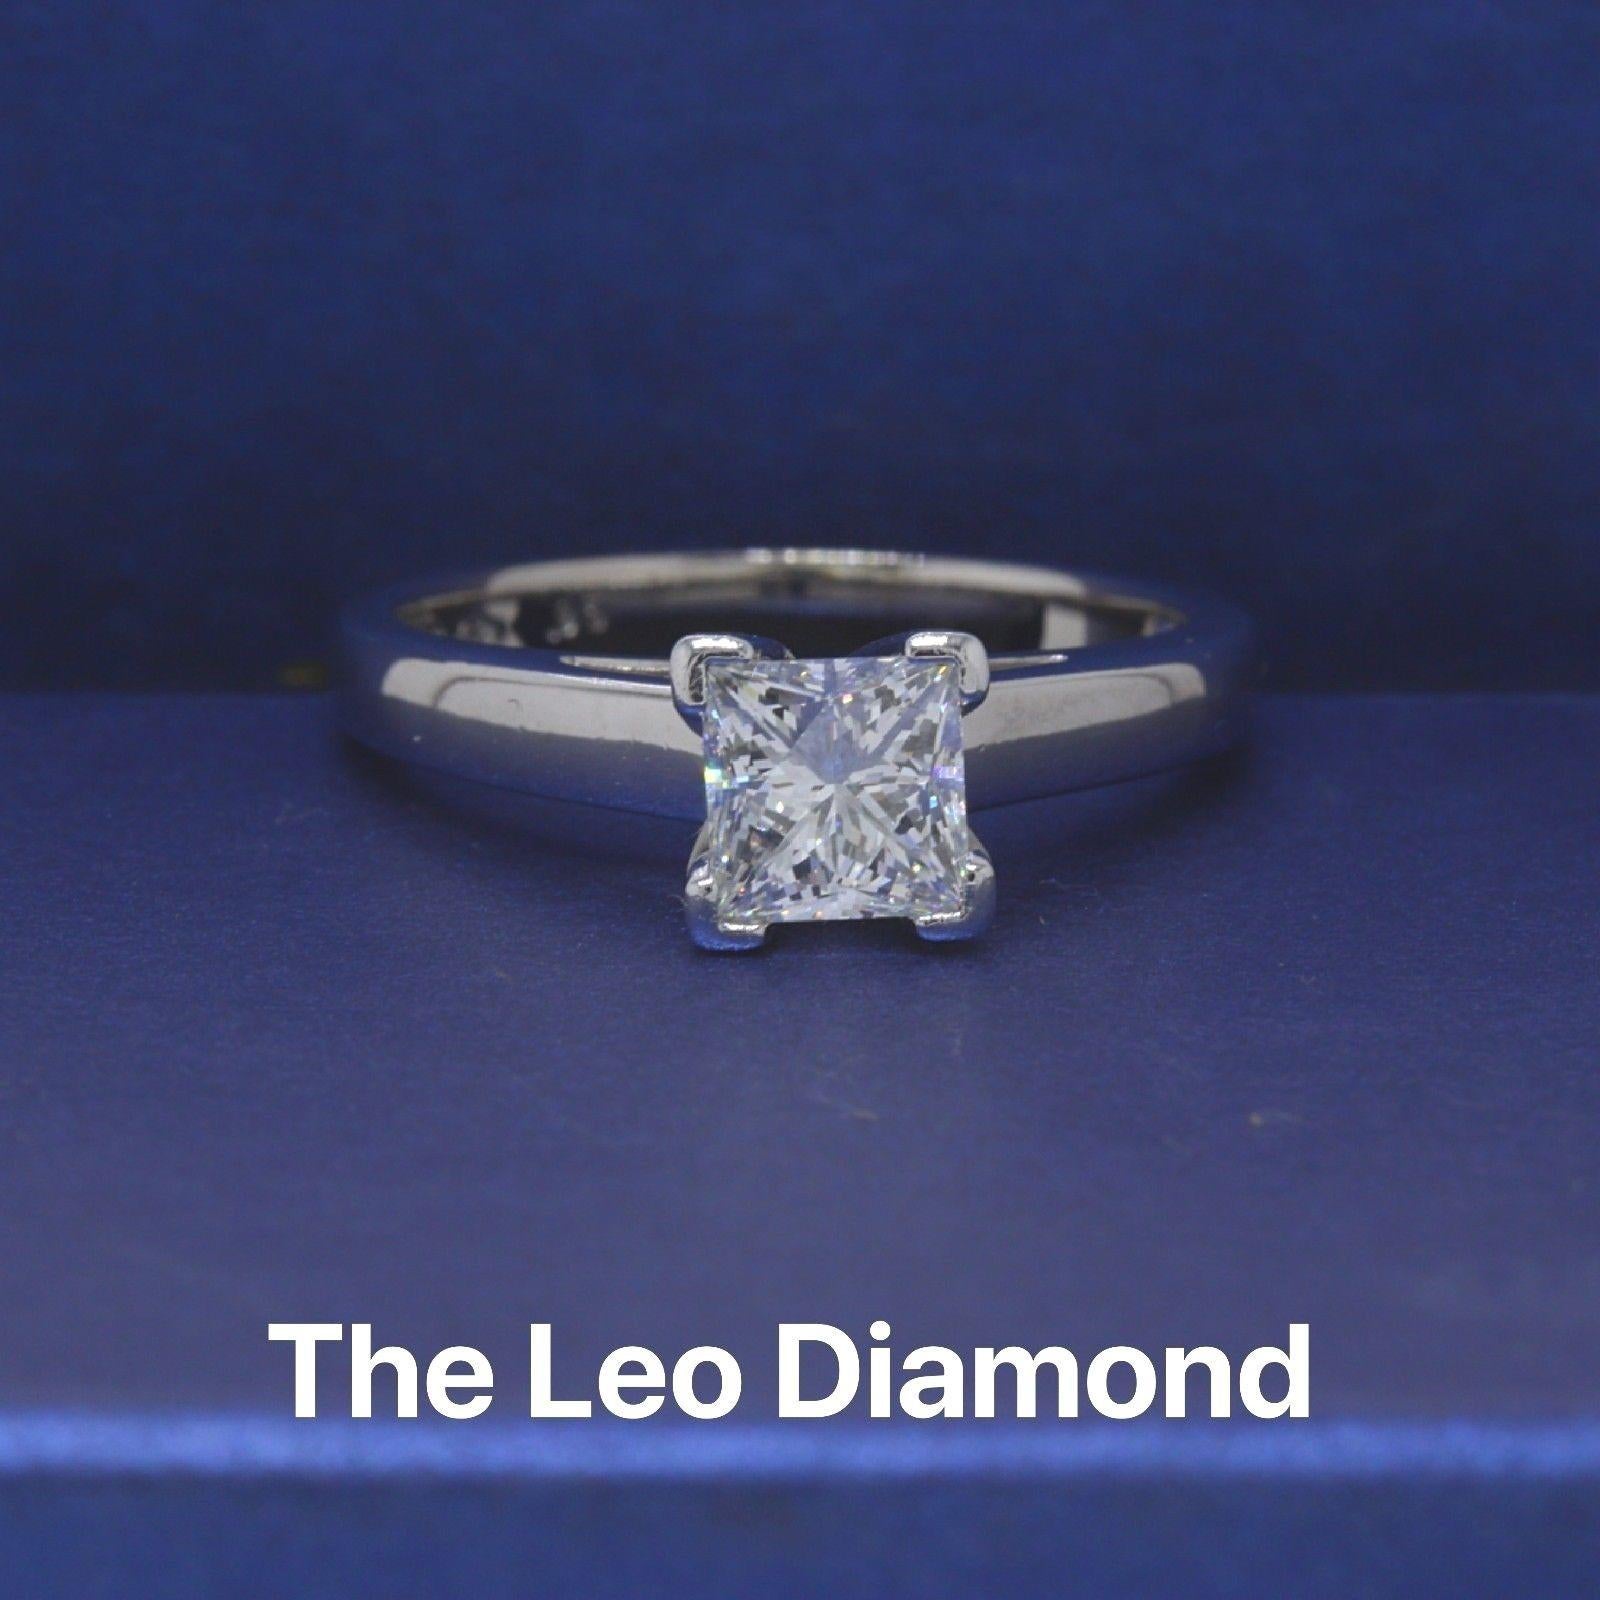 LEO DIAMOND
Stil: Solitär
Seriennummer: LEO 2008450S
Metall: 14KT Weißgold
Größe:  6,75 (beträchtlich)
Karat Gesamtgewicht:  0,95CTS
Form des Diamanten: LEO Prinzessin
Farbe und Reinheit des Diamanten: H / SI1
Kommentare: Diamant ist Laser